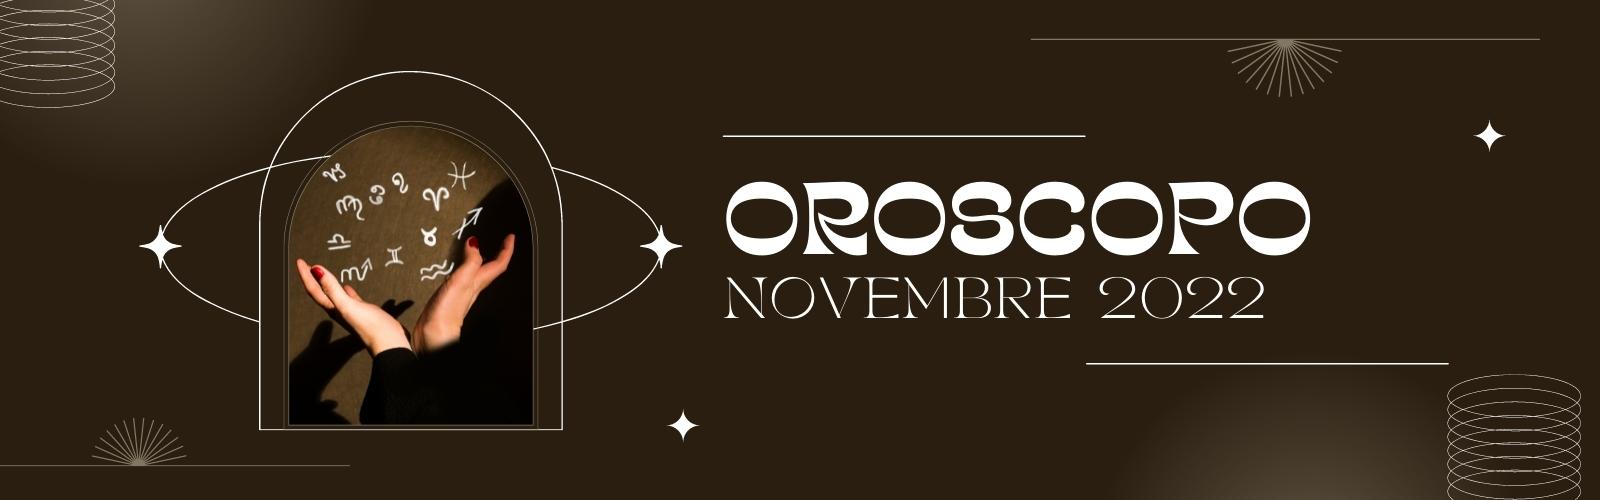 Oroscopo novembre 2022 (1600 × 500 px)